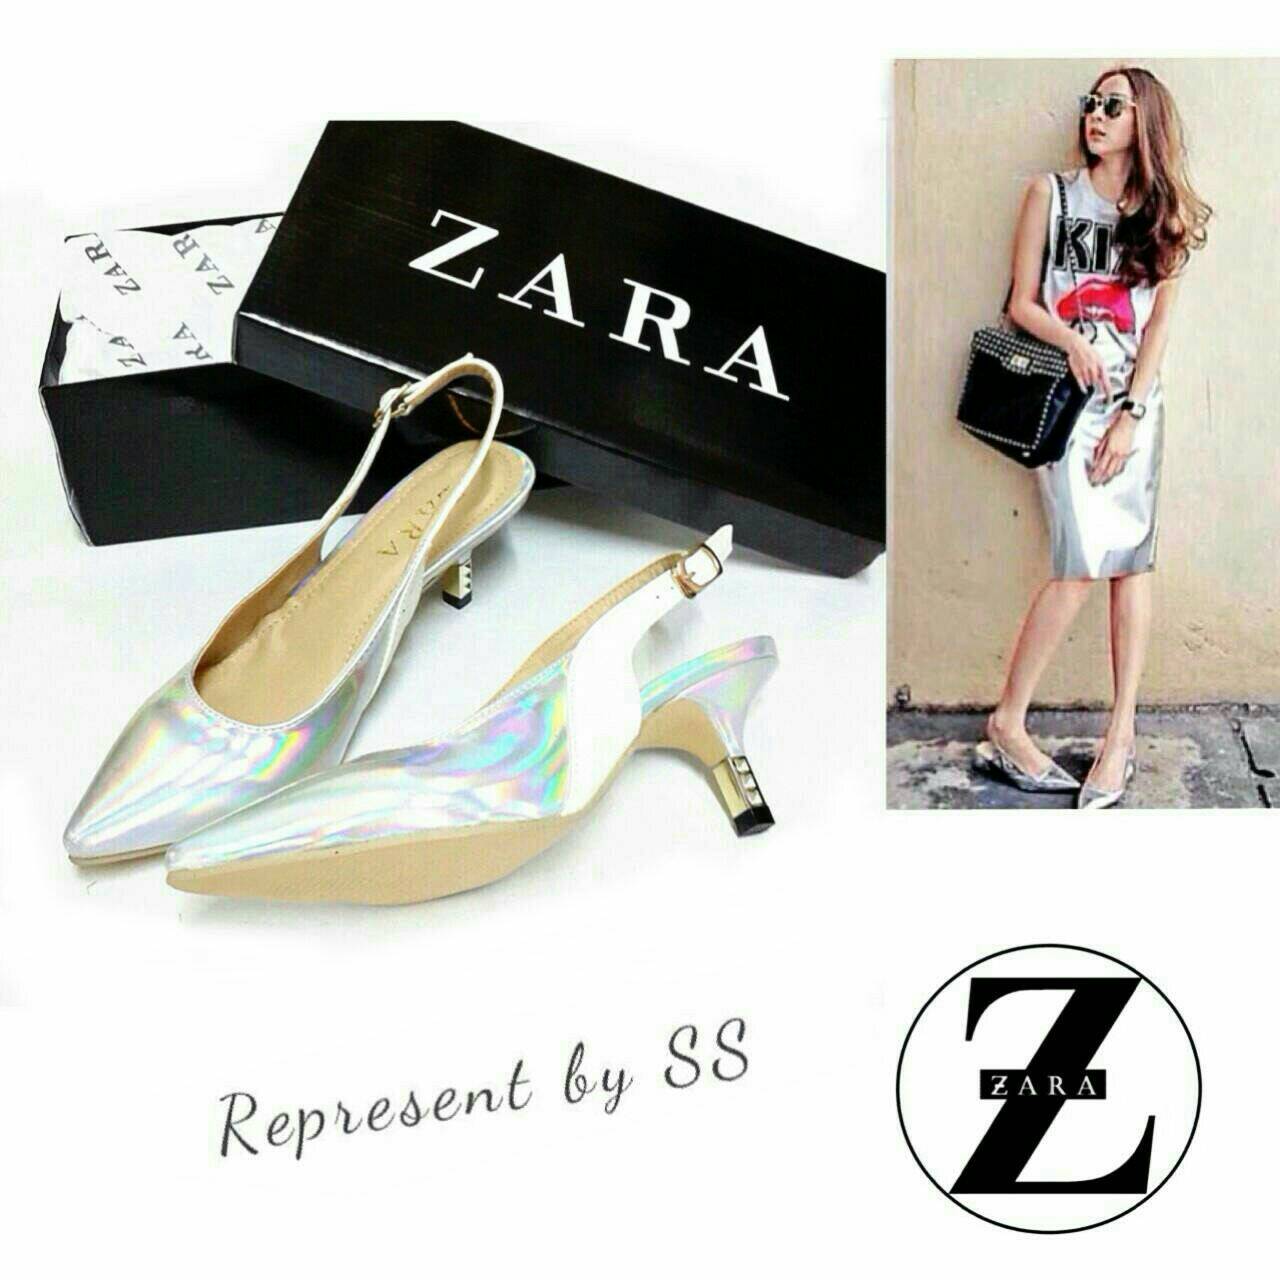 พร้อมส่งค่ะ   ขายดีมาก!! อัพไซด์พร้อมรีวิว Zara ส้นทอง งานพรีเมี่ยมกล่องดำ Zara ทูโทนหนังแก้ว รูปที่ 1